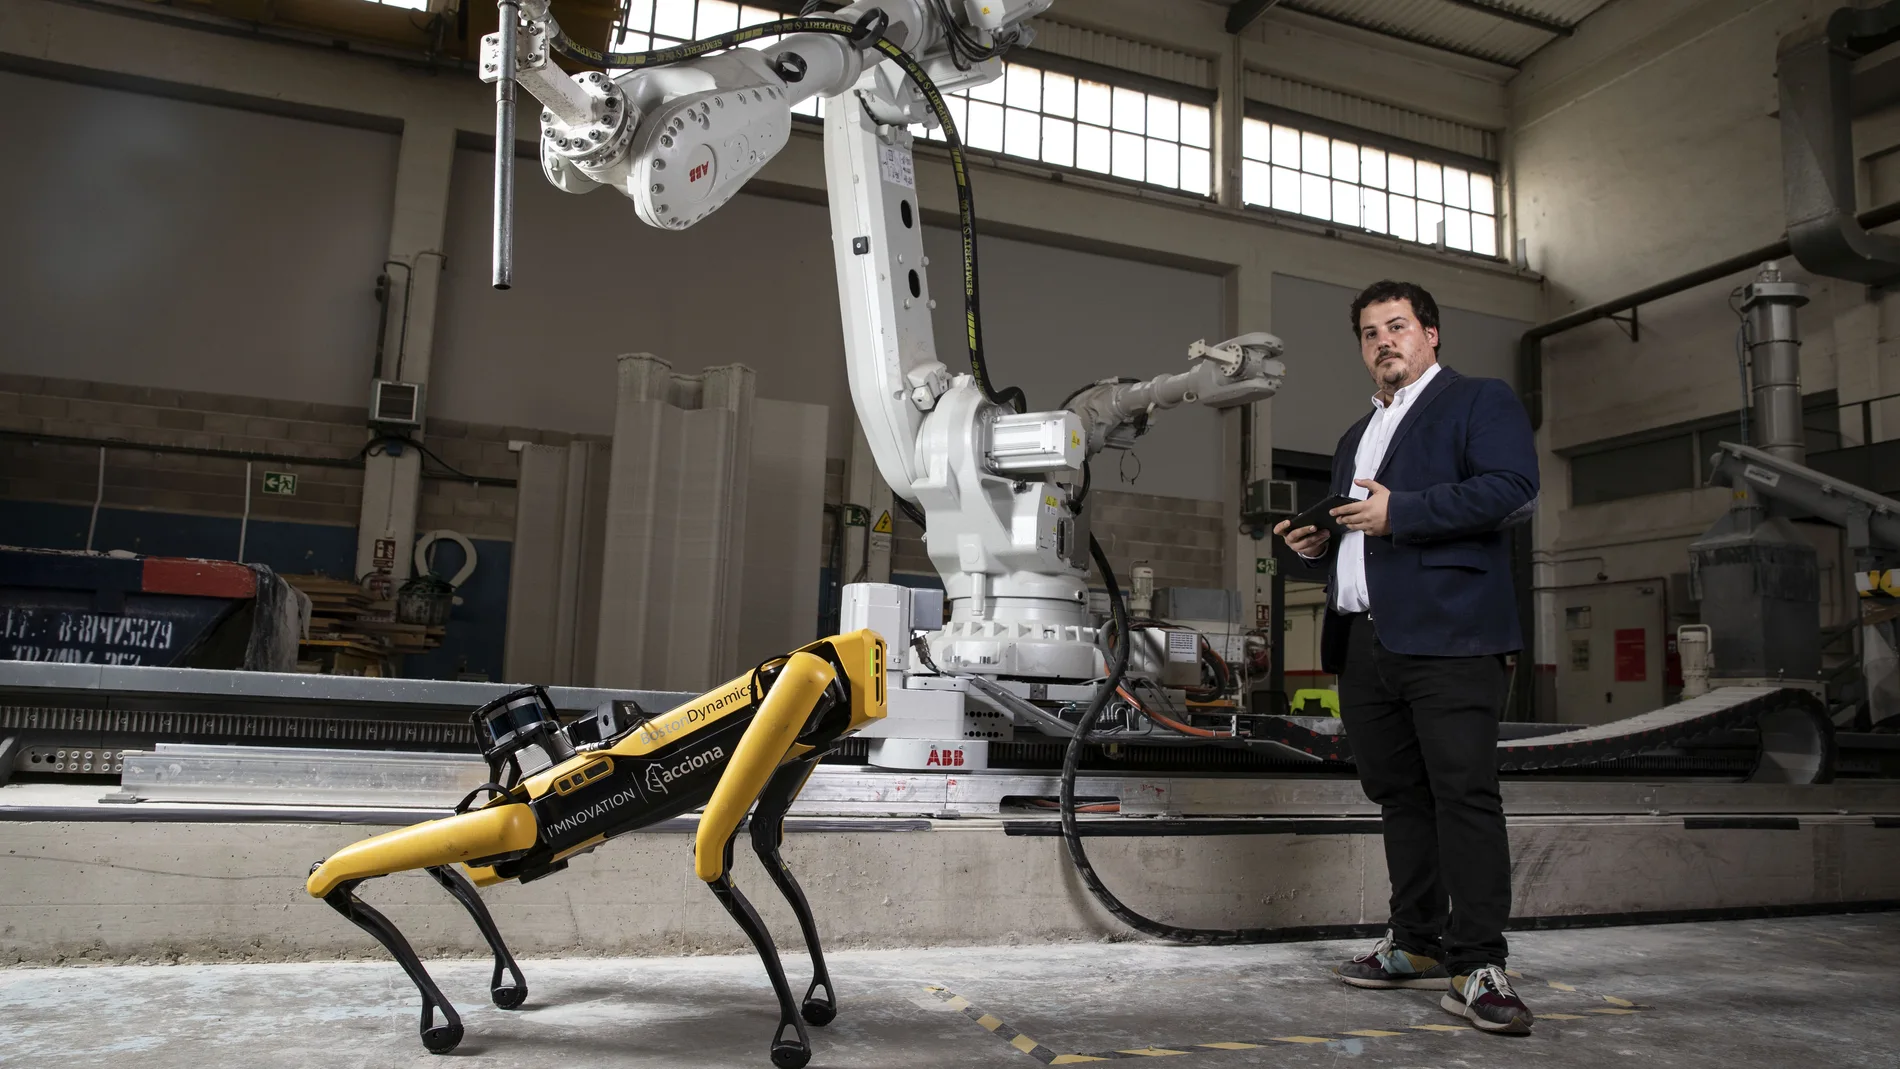 Carlos Crespo, Automation & Robotics Manager, con el perro robot y el brazo robótico que Acciona tiene en su centro de innovación